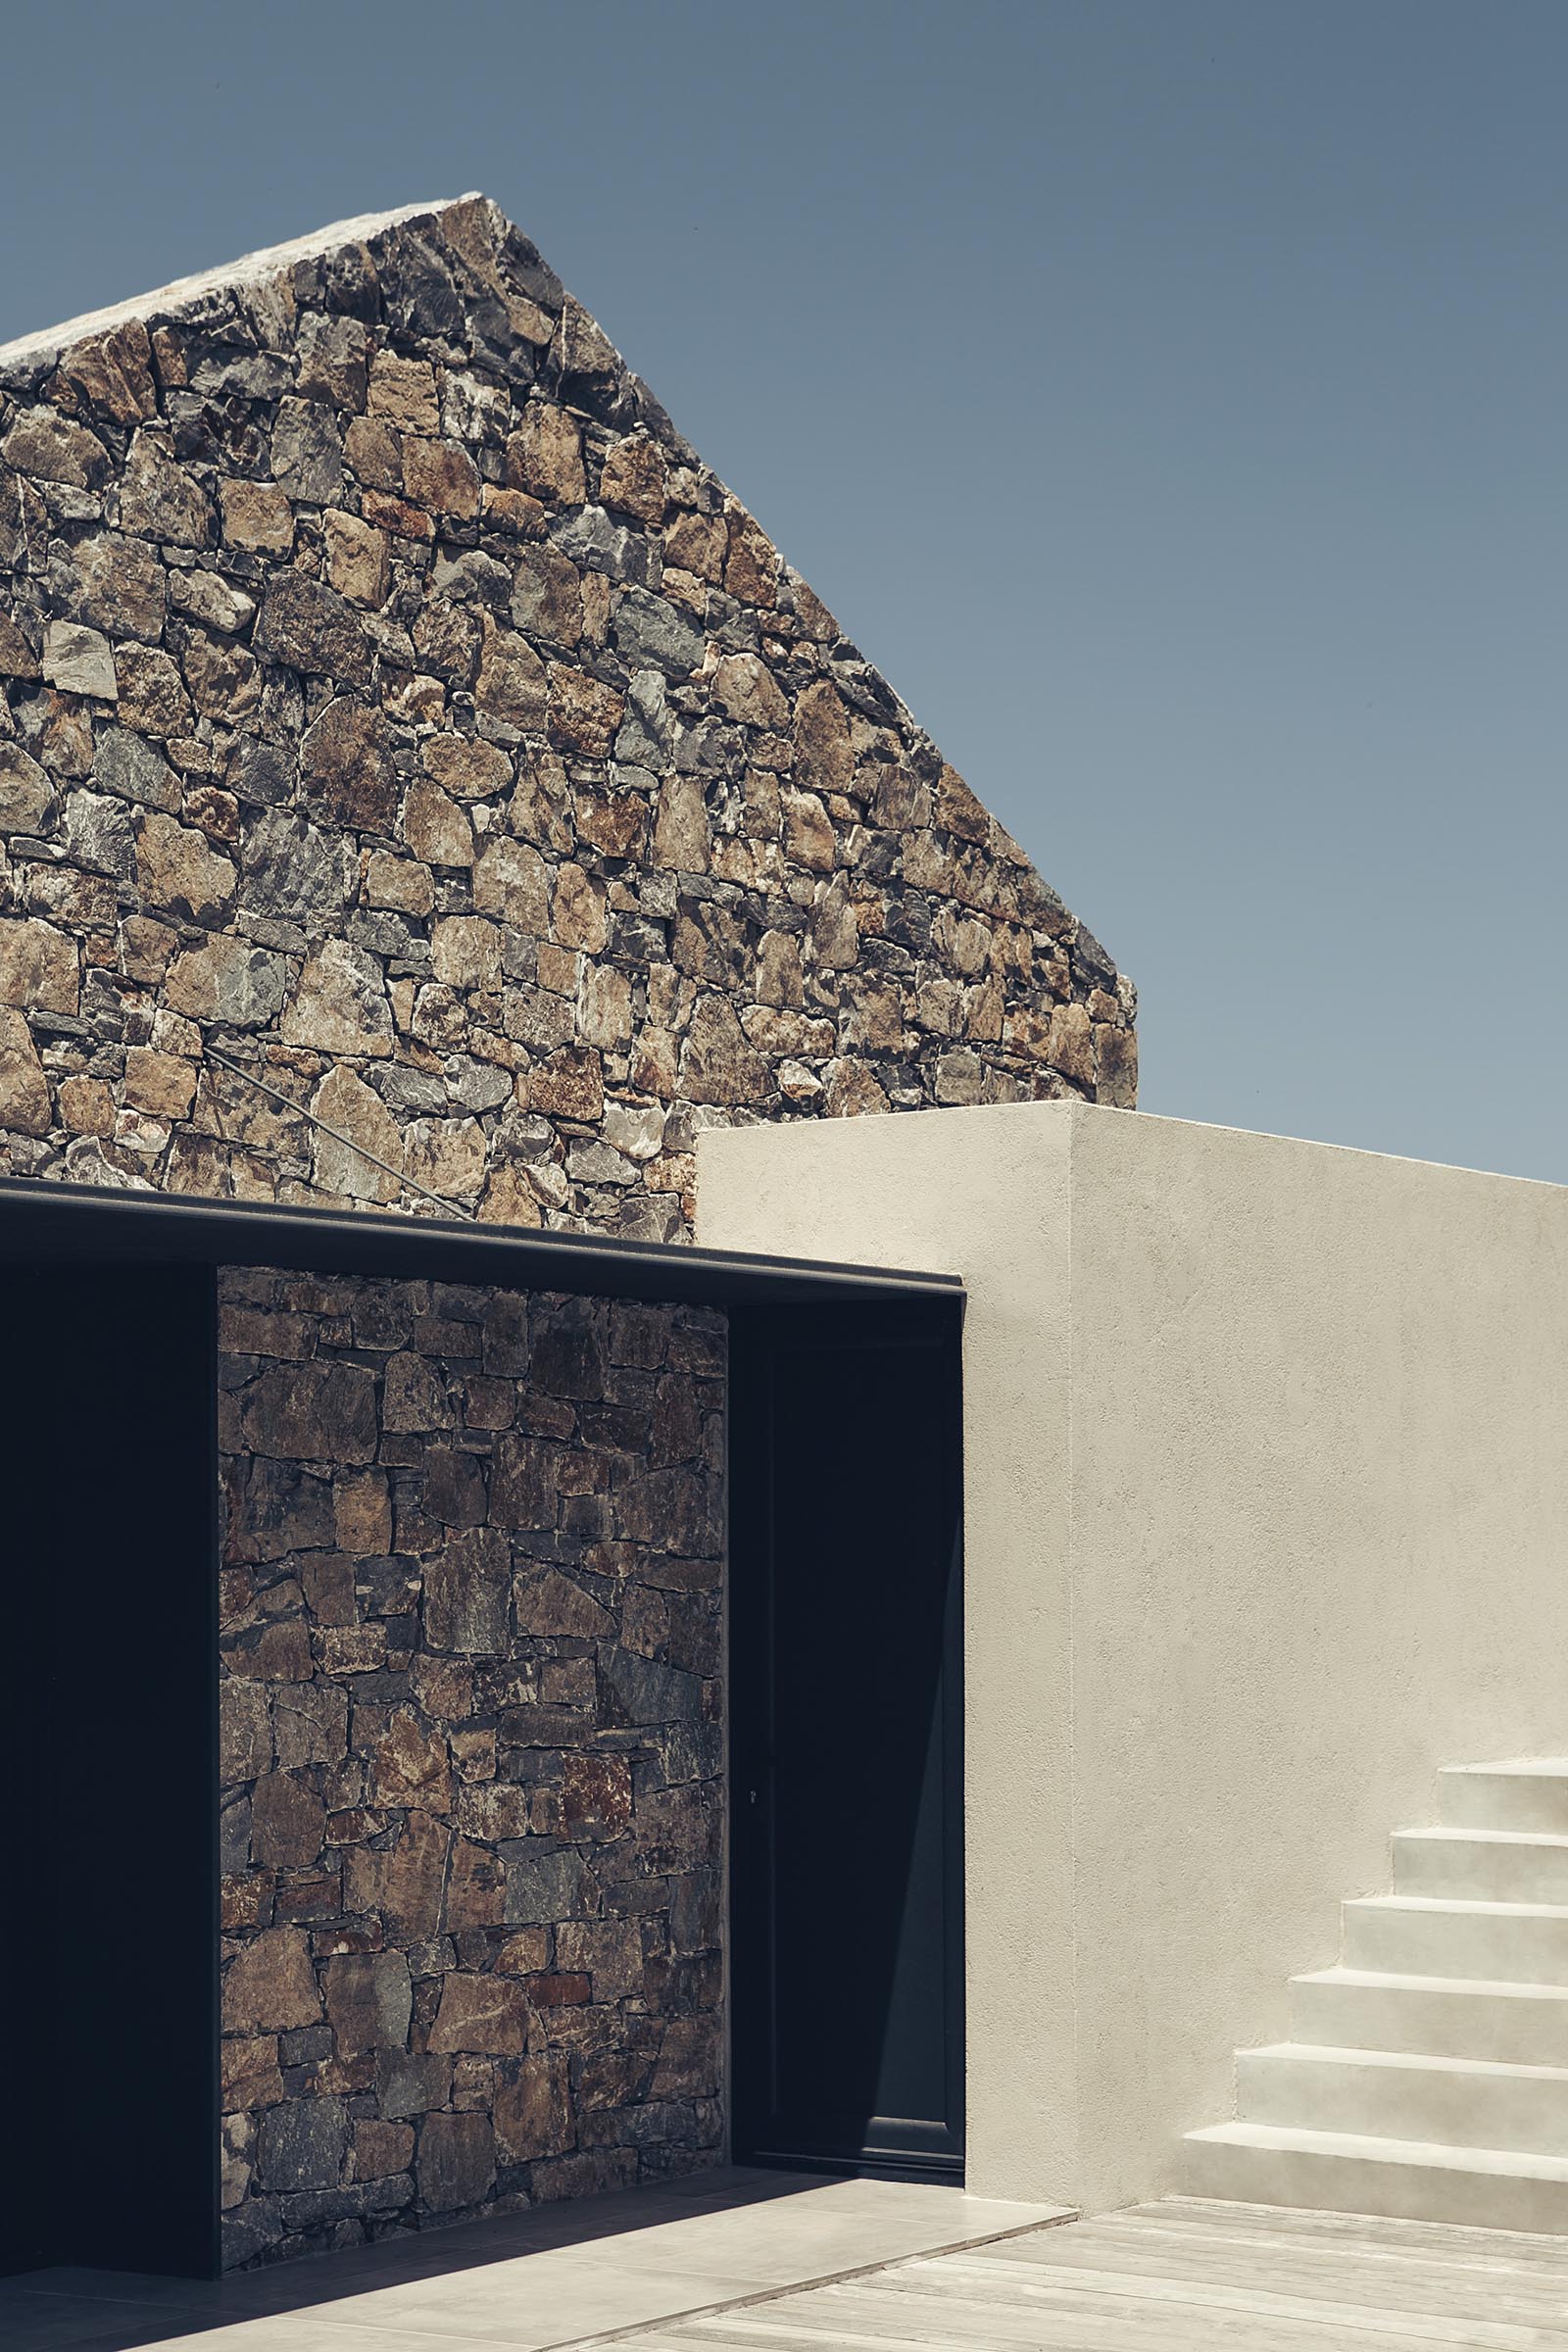 Акценты из черного металла контрастируют с каменной кладкой этого современного дома.